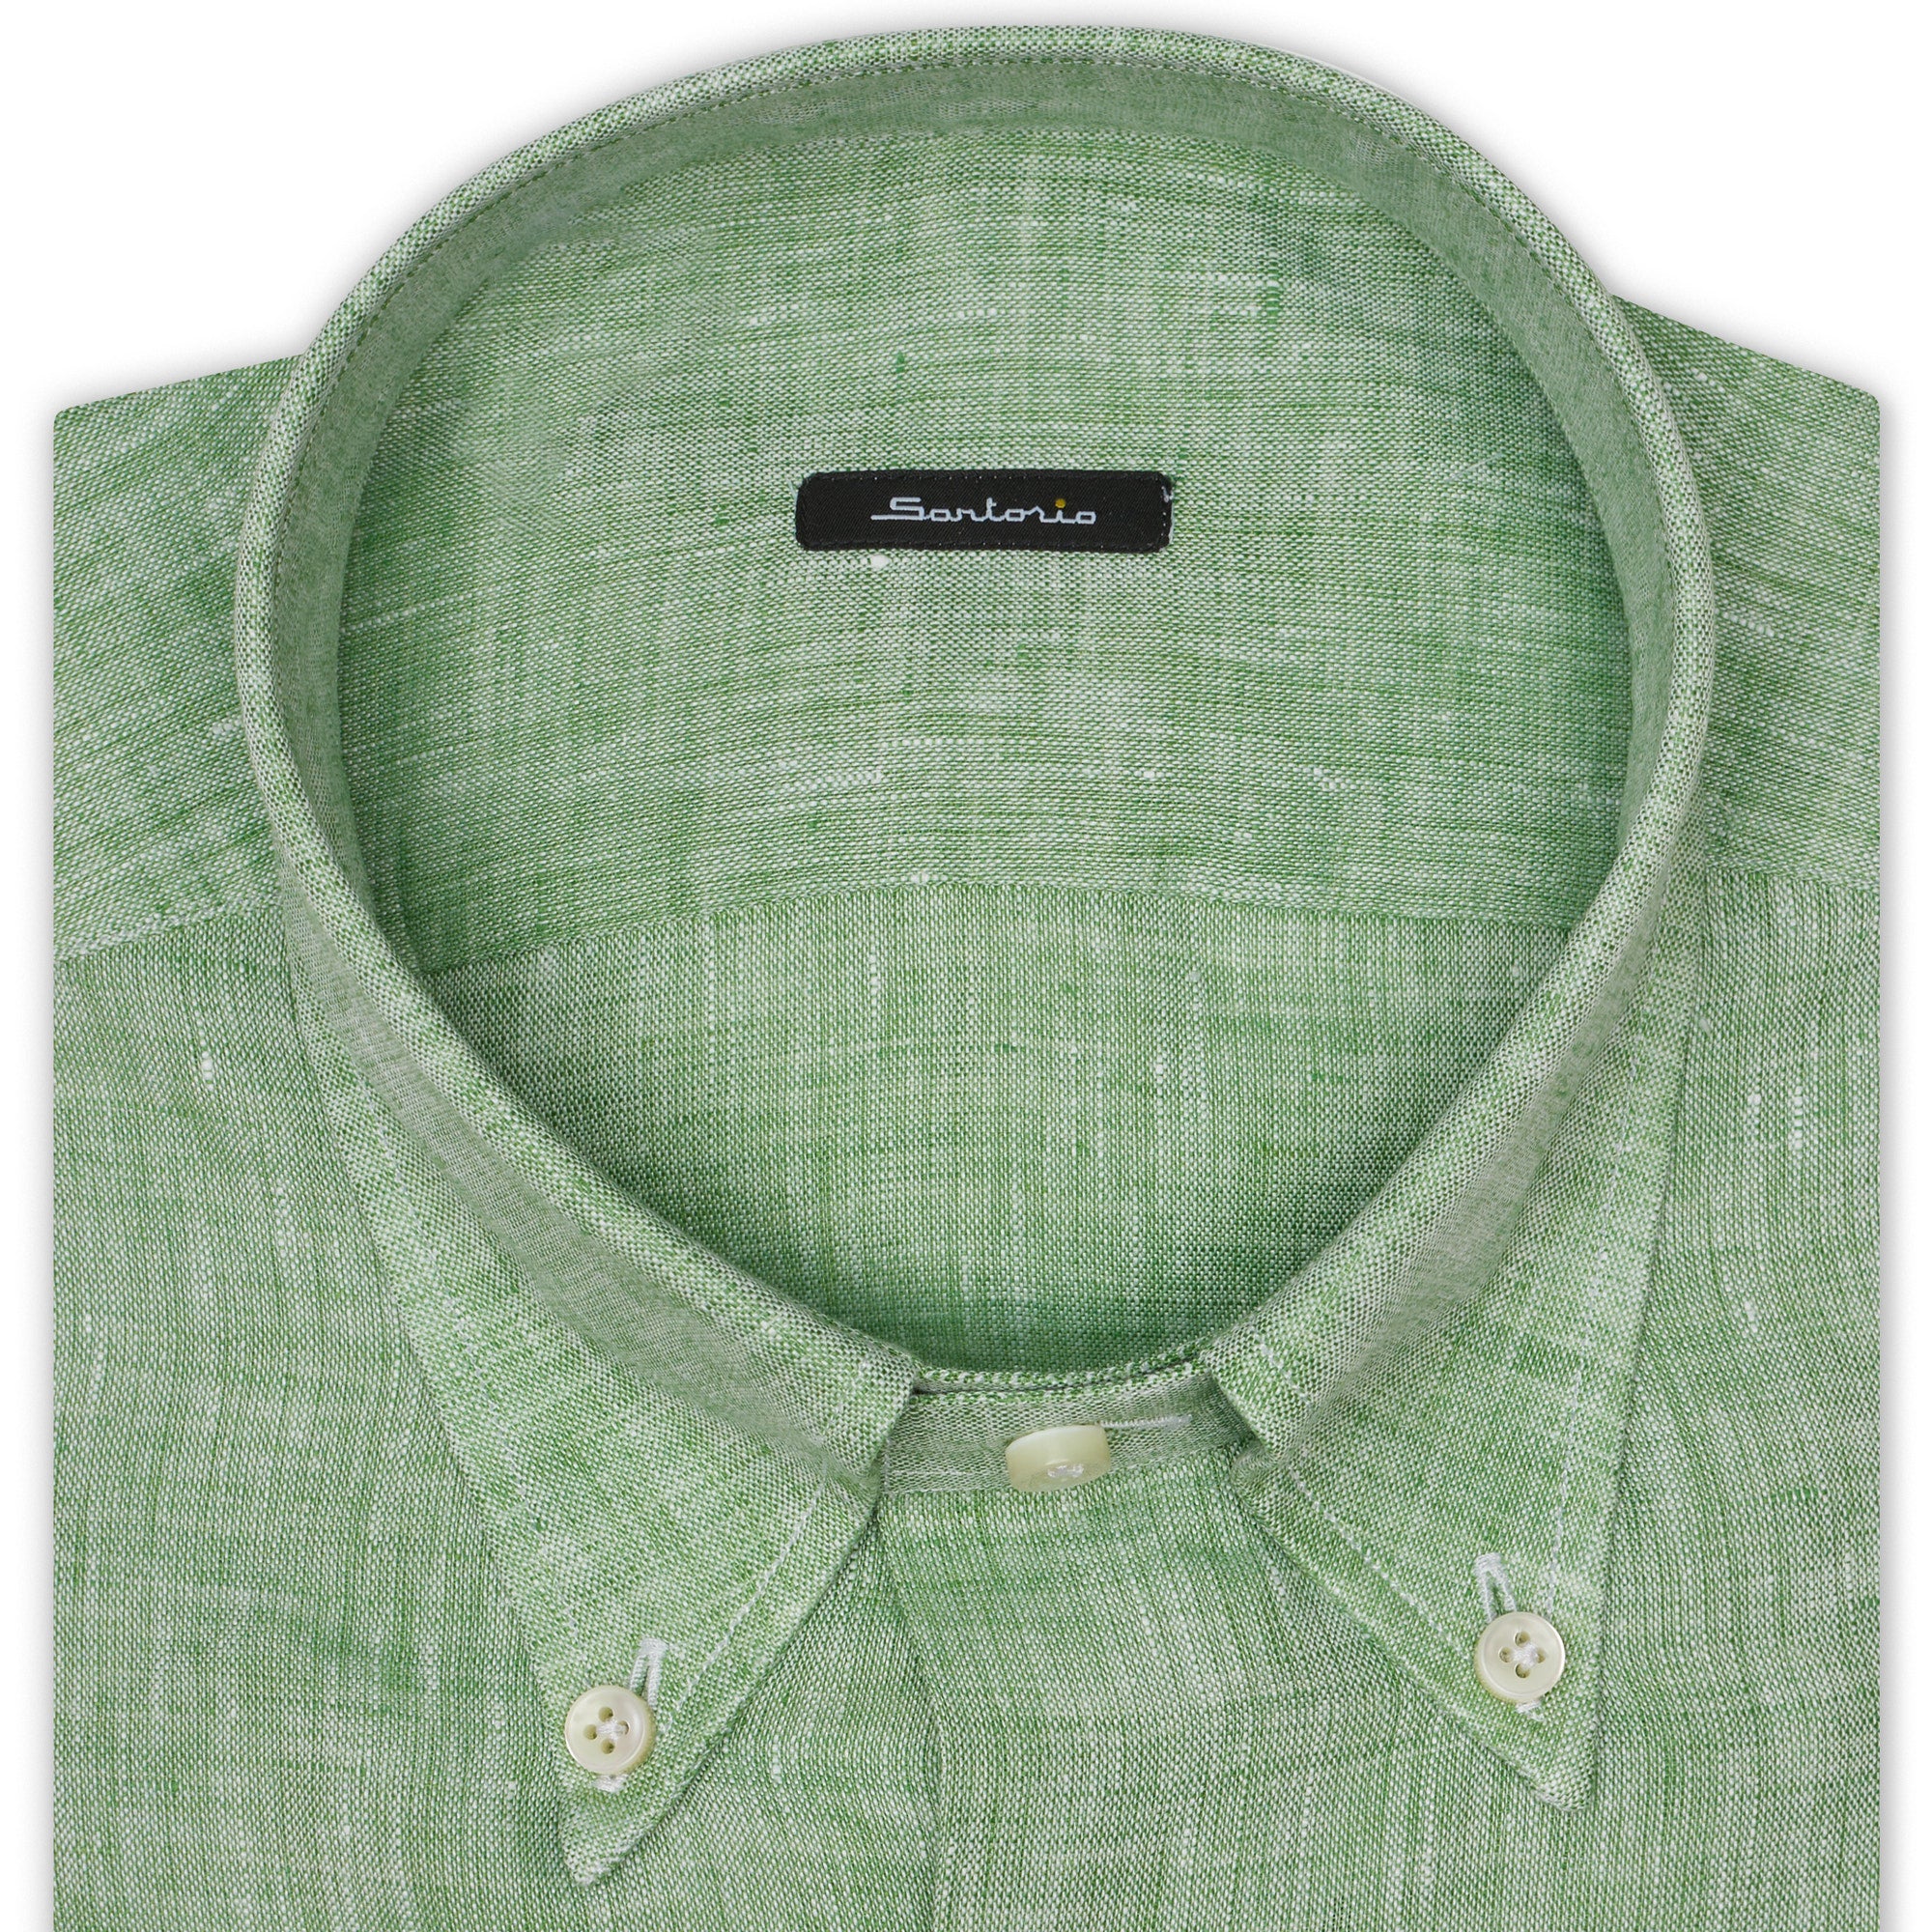 SARTORIO Napoli by KITON Green Linen Button-Down Casual Shirt NEW SARTORIO